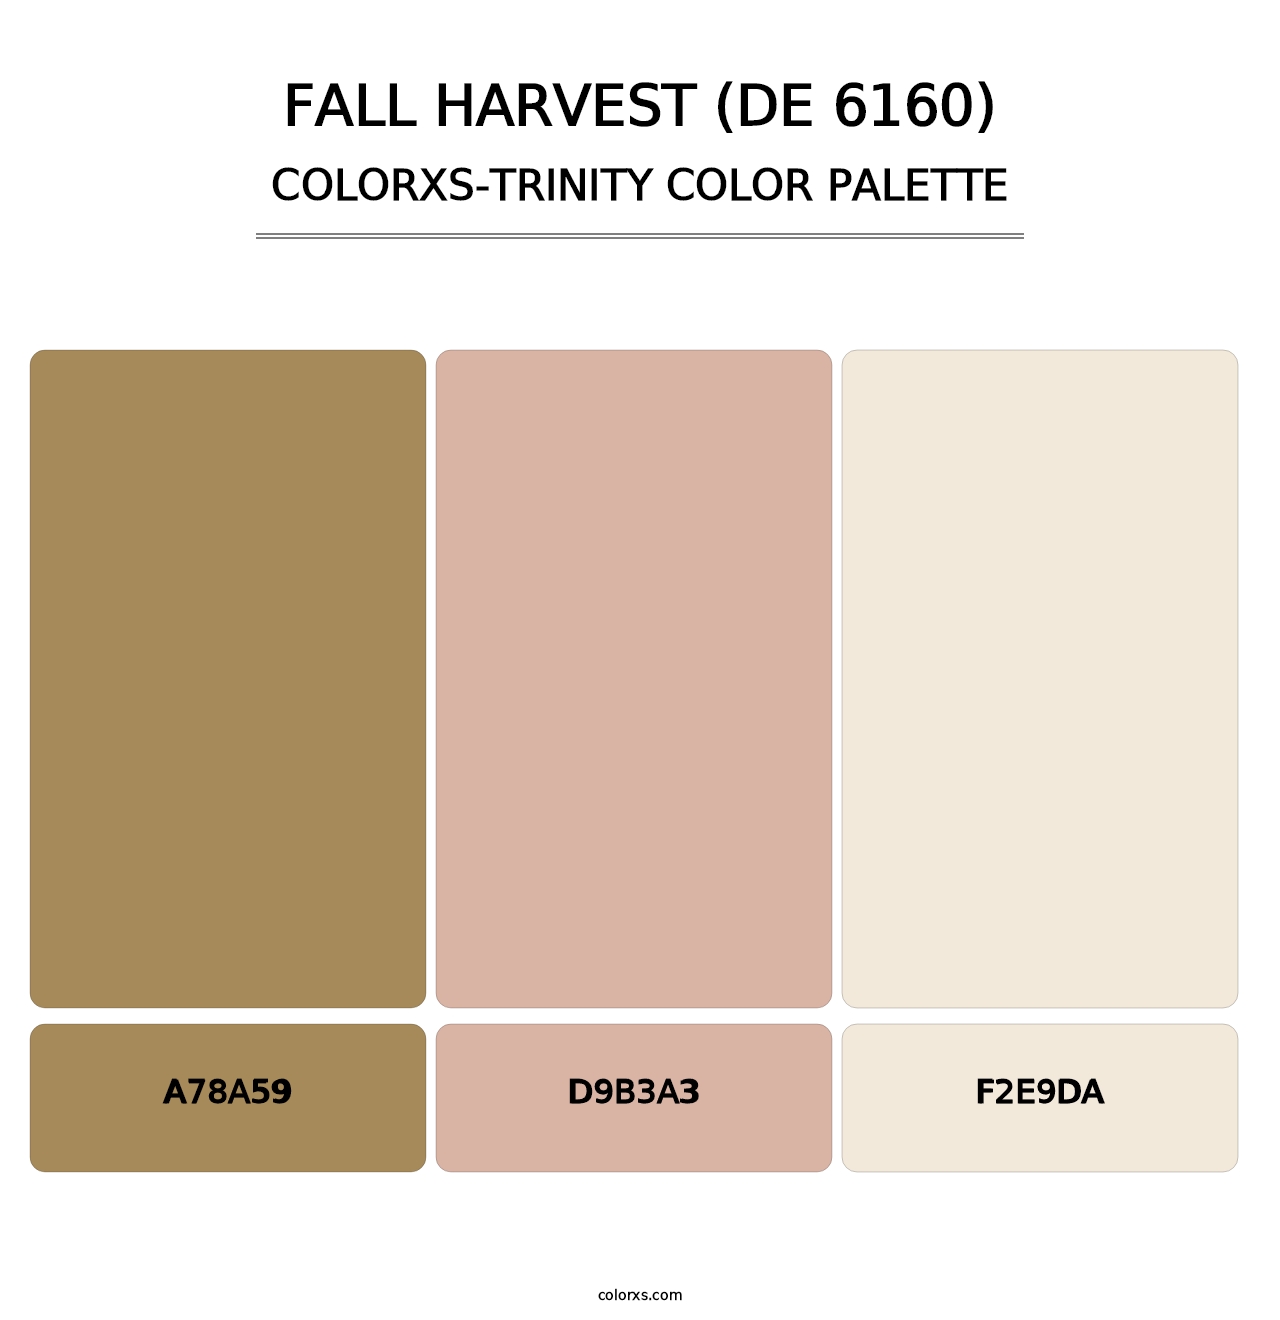 Fall Harvest (DE 6160) - Colorxs Trinity Palette